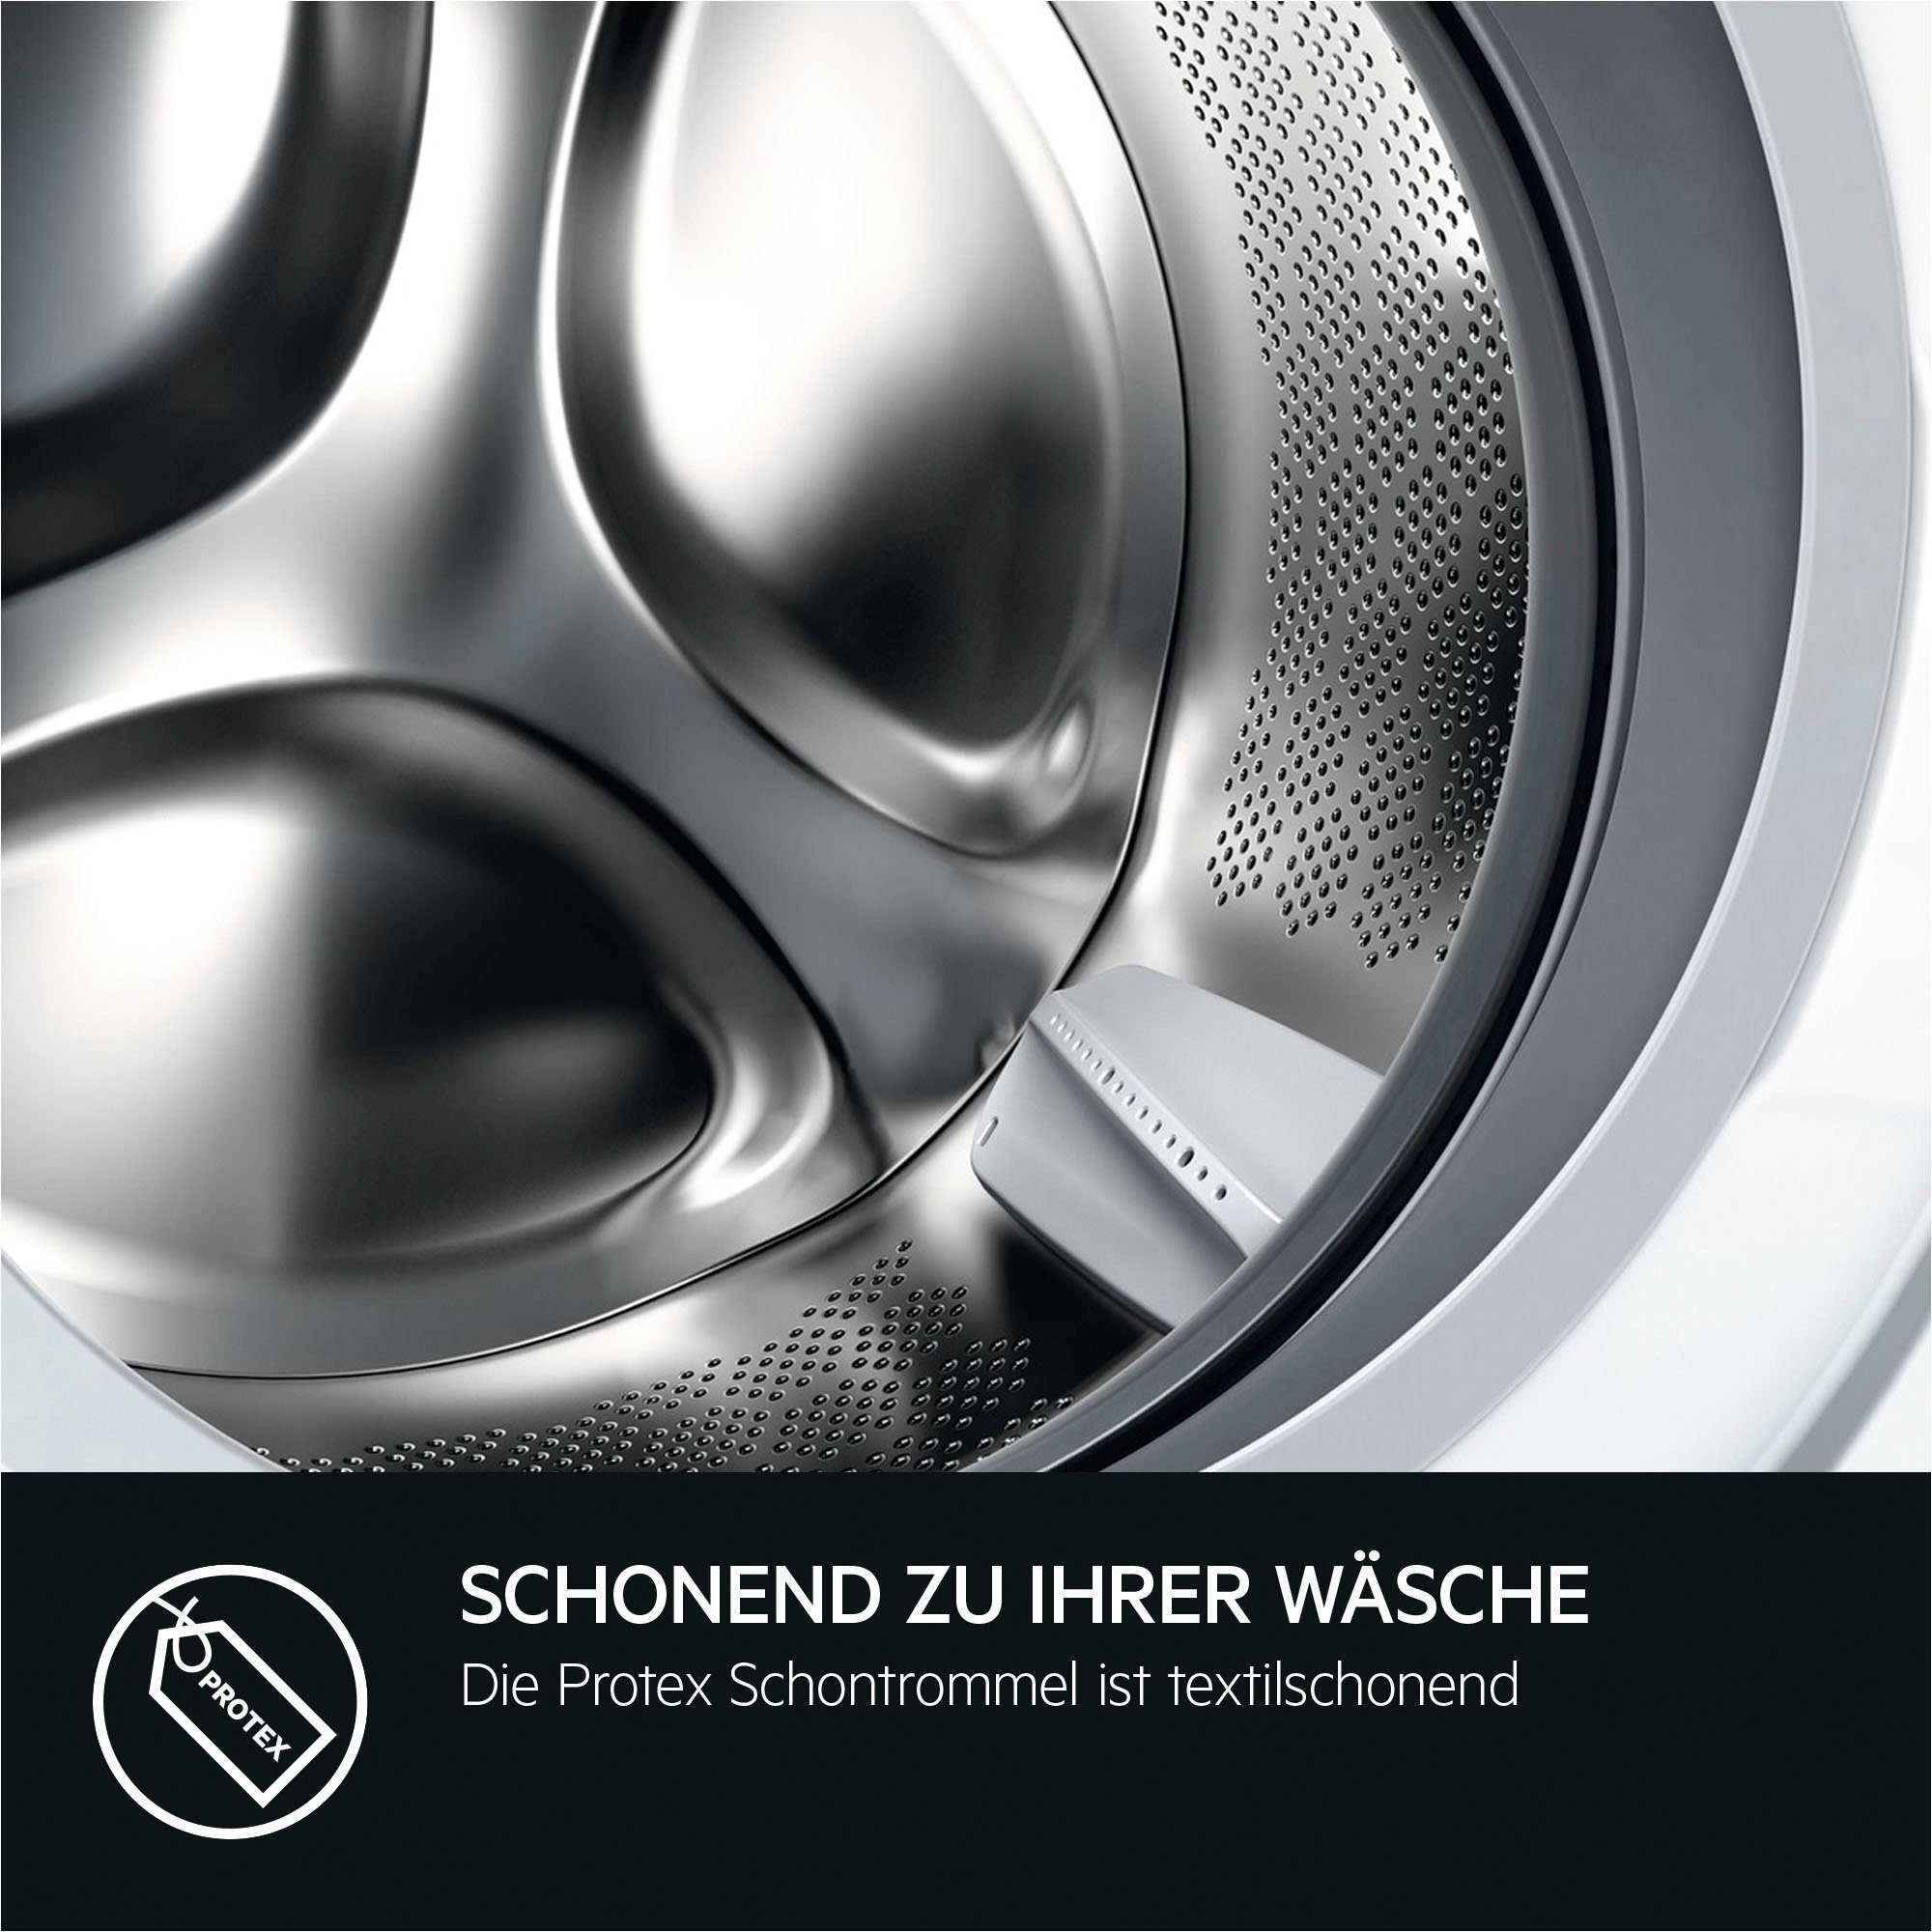 AEG Waschmaschine LR6D60490 914915144, 9 bis 40% Energie ProSense® und 1400 kg, U/min, Wasser Mengenautomatik​ spart - Zeit